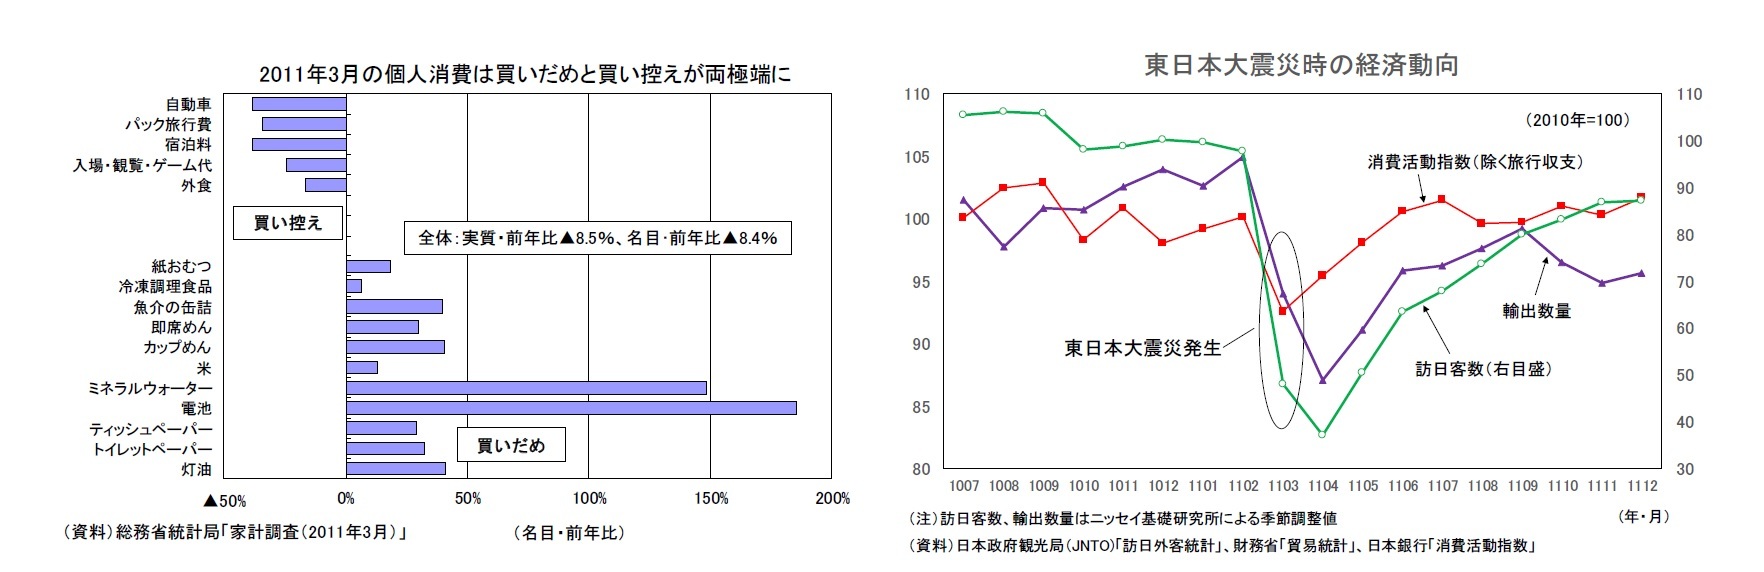 2011年3月の個人消費は買いだめと買い控えが両極端に/東日本大震災時の経済動向